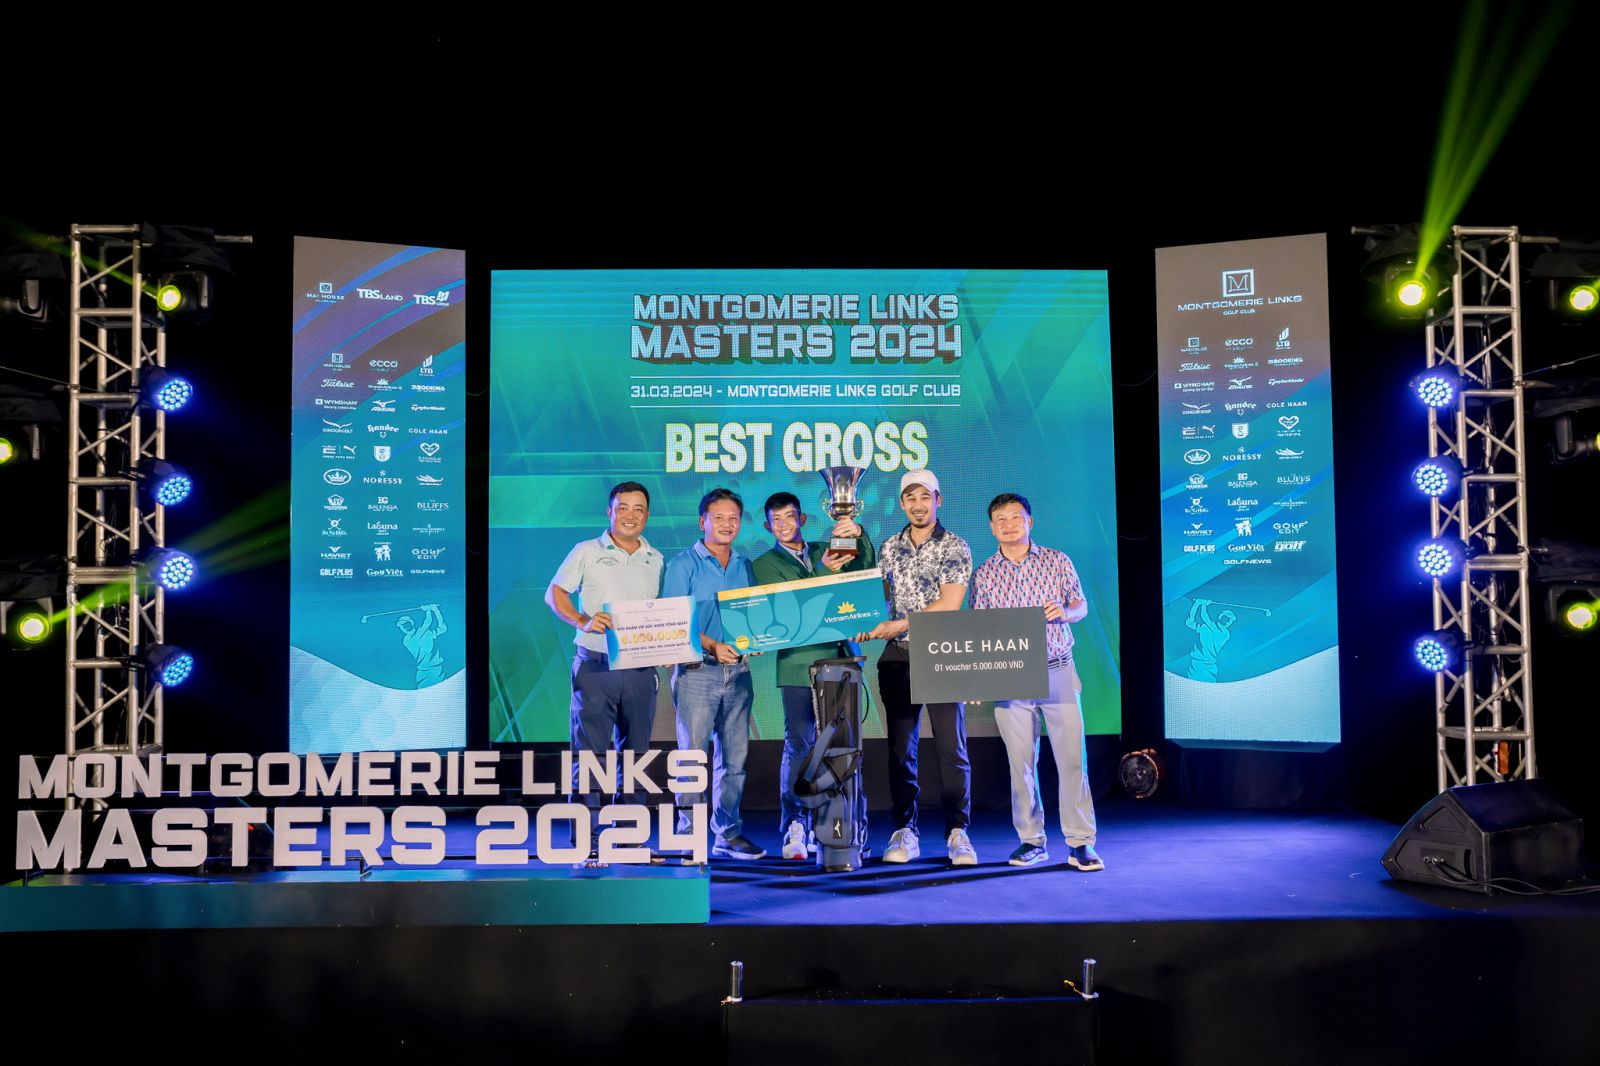 Hà Nam Khánh trở thành golfer trẻ nhất lịch sử vô địch Montgomerie Links Masters